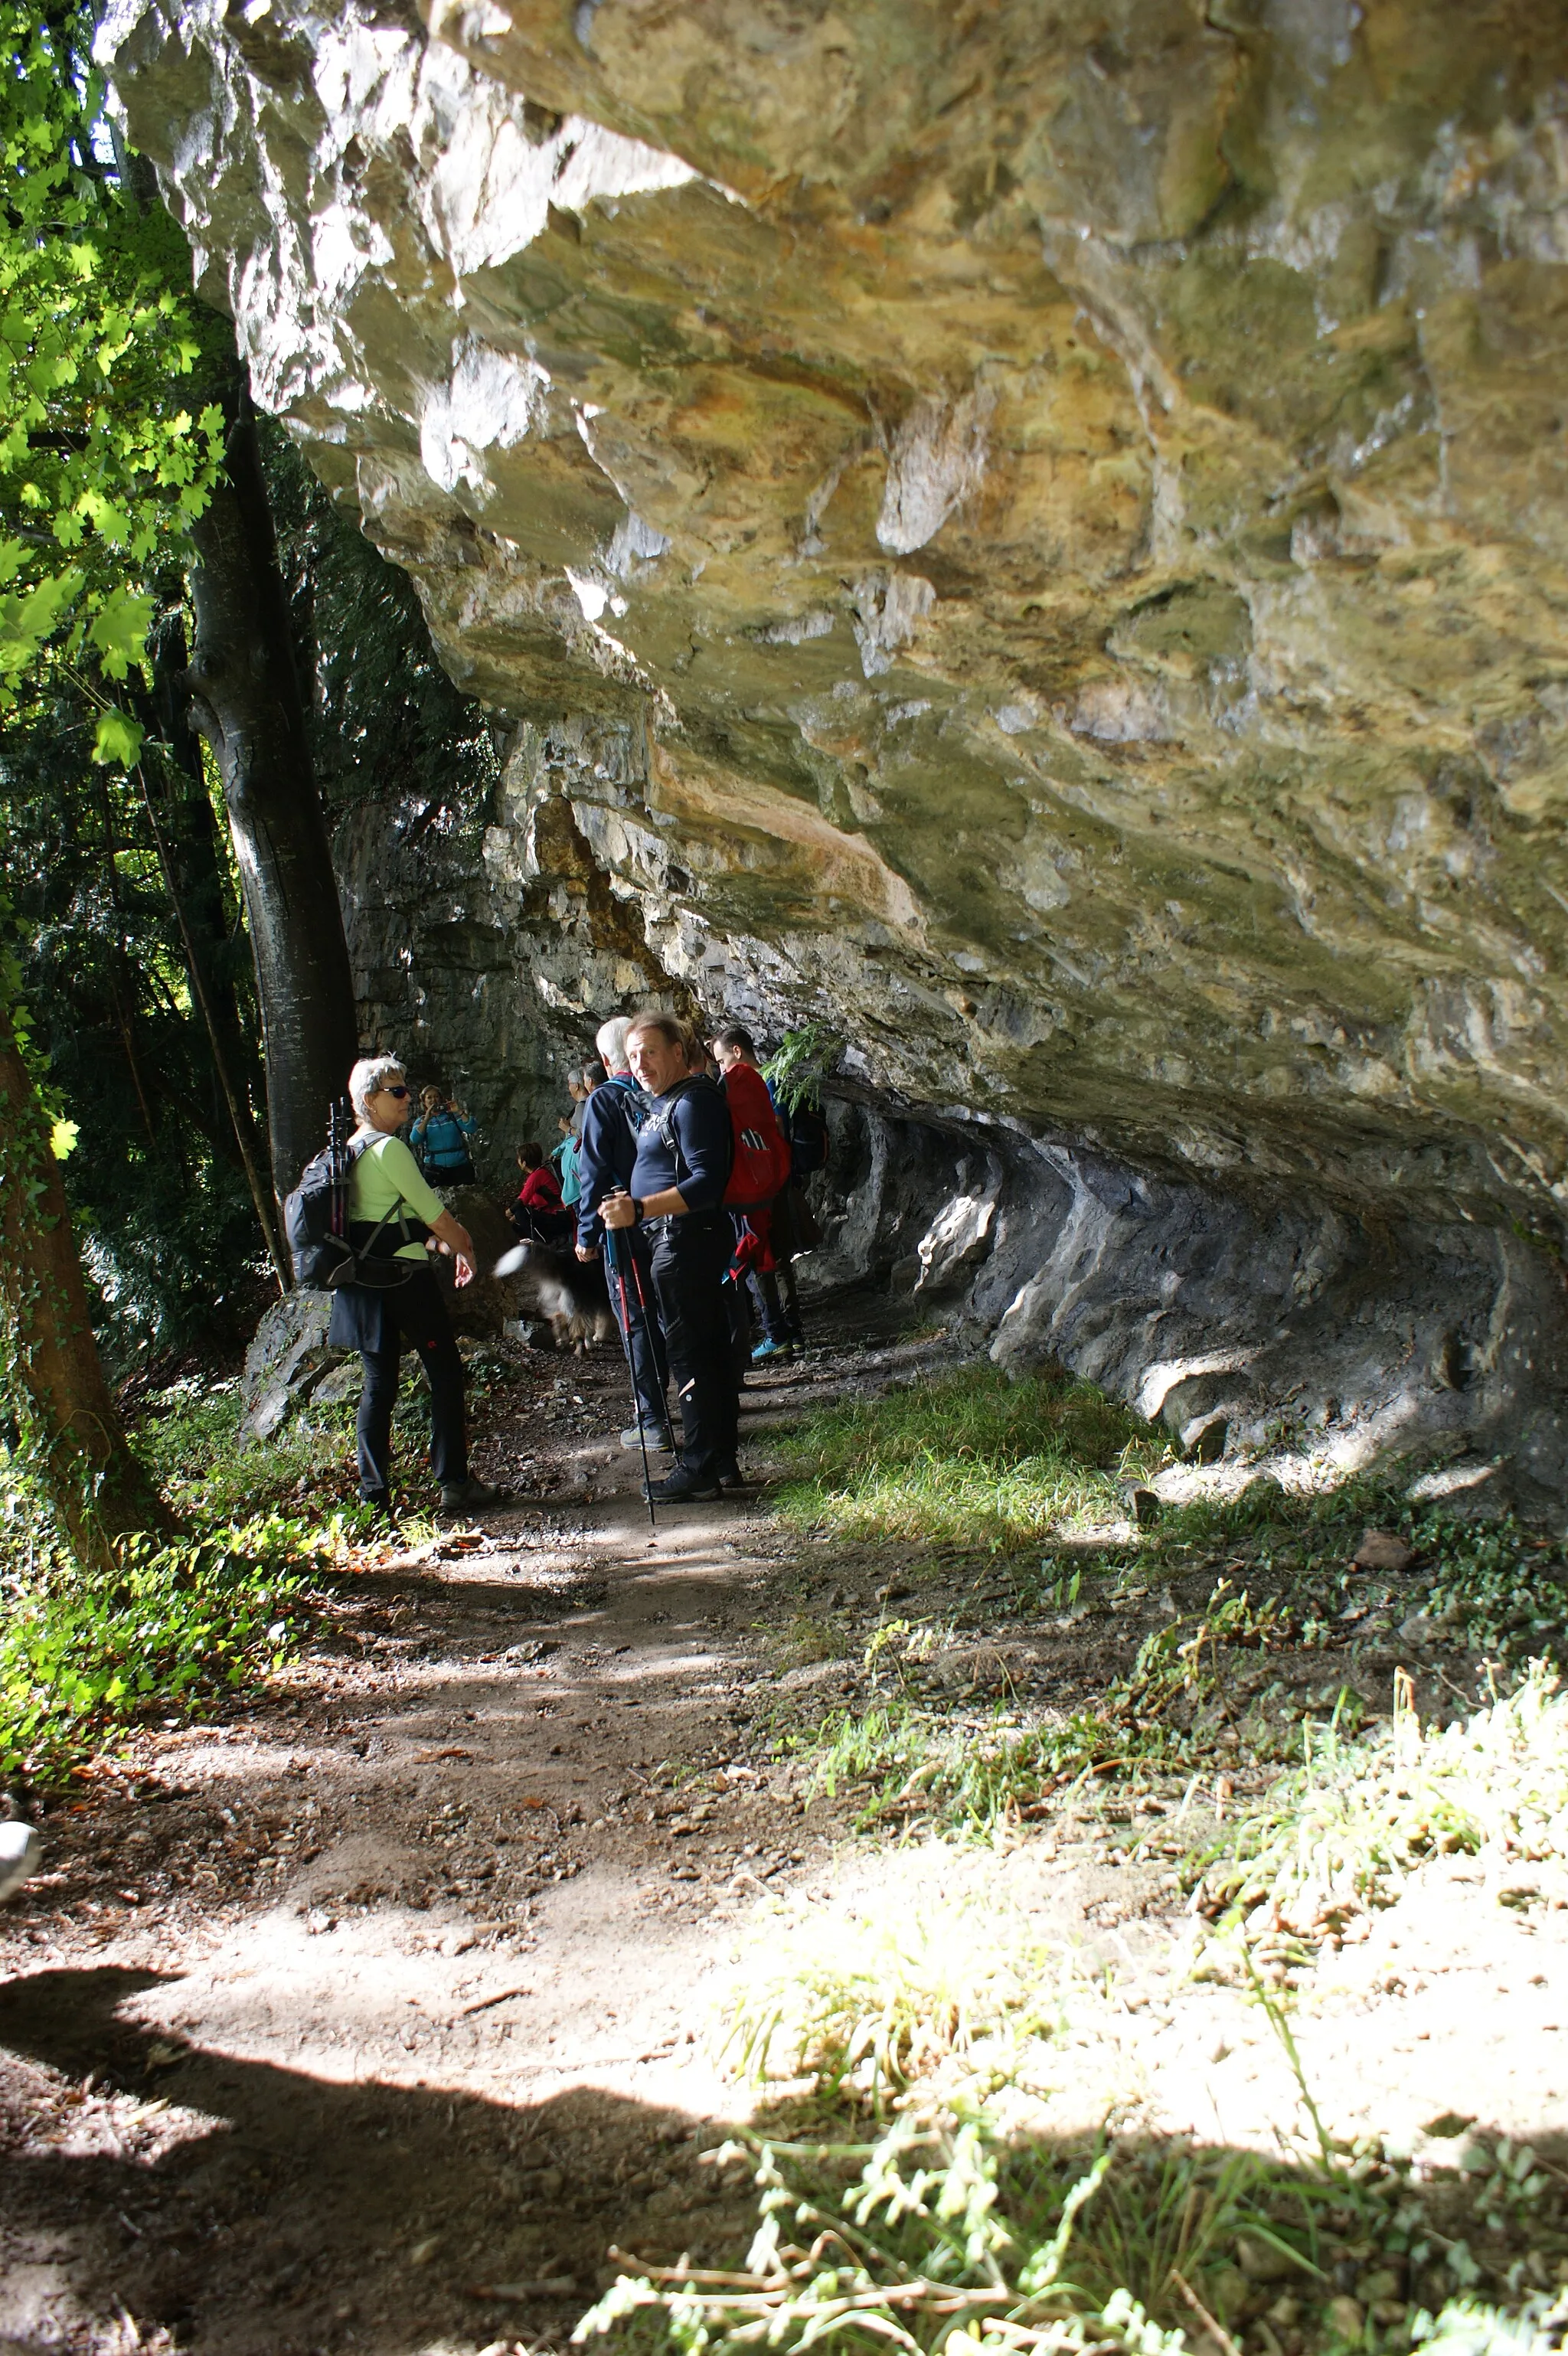 Photo showing: Hiking trail "Felsband" between Feldkirch, Vorarlberg, Austria and Liechtenstein (Bendern) on the Eschnerberg (also called Eschner Berg or Schellenberg).